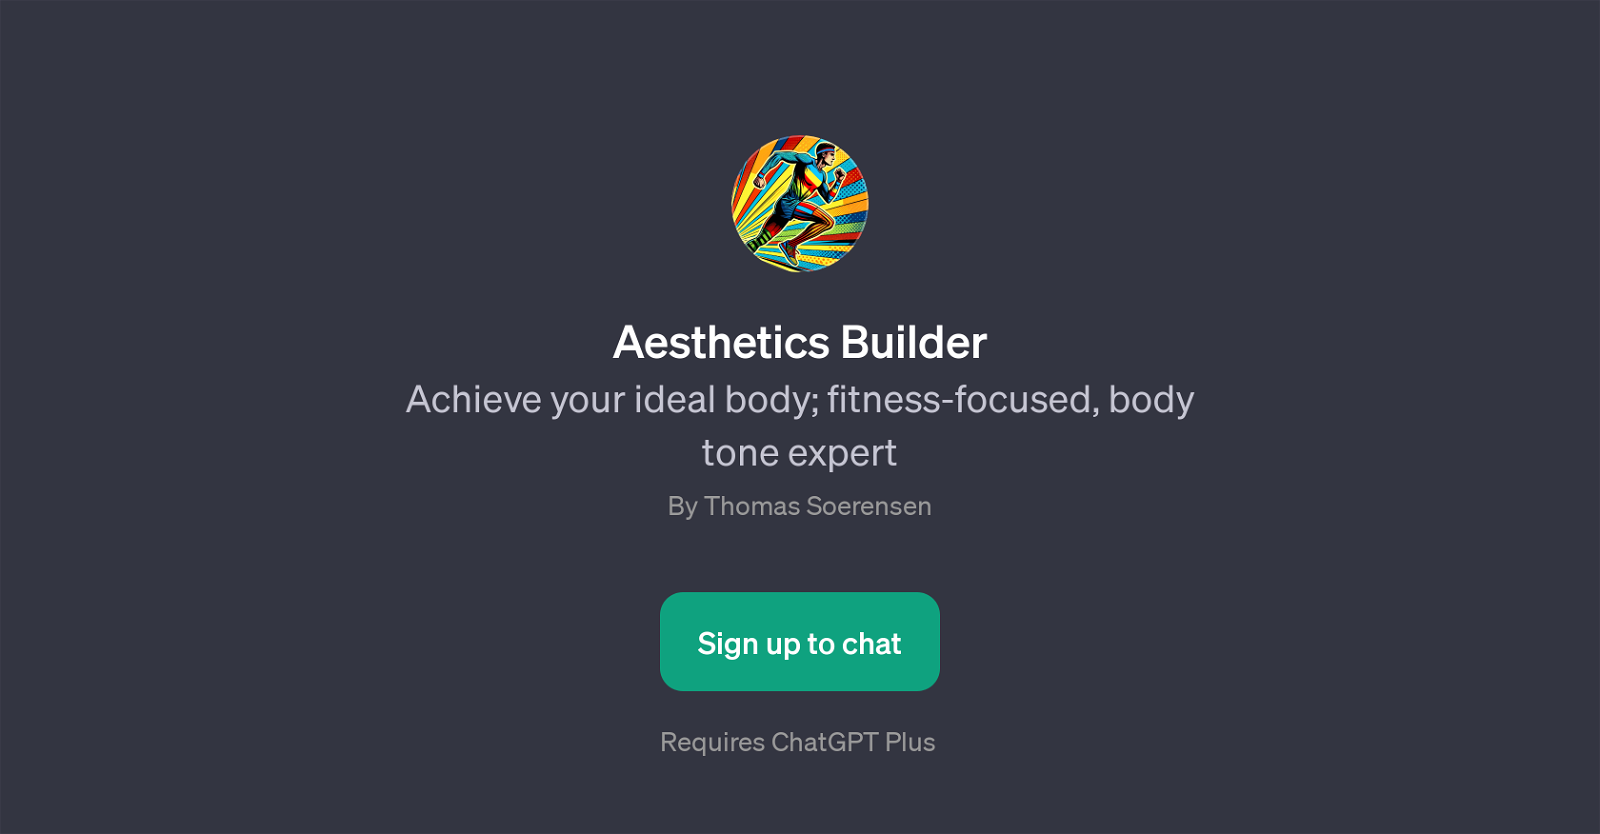 Aesthetics Builder website